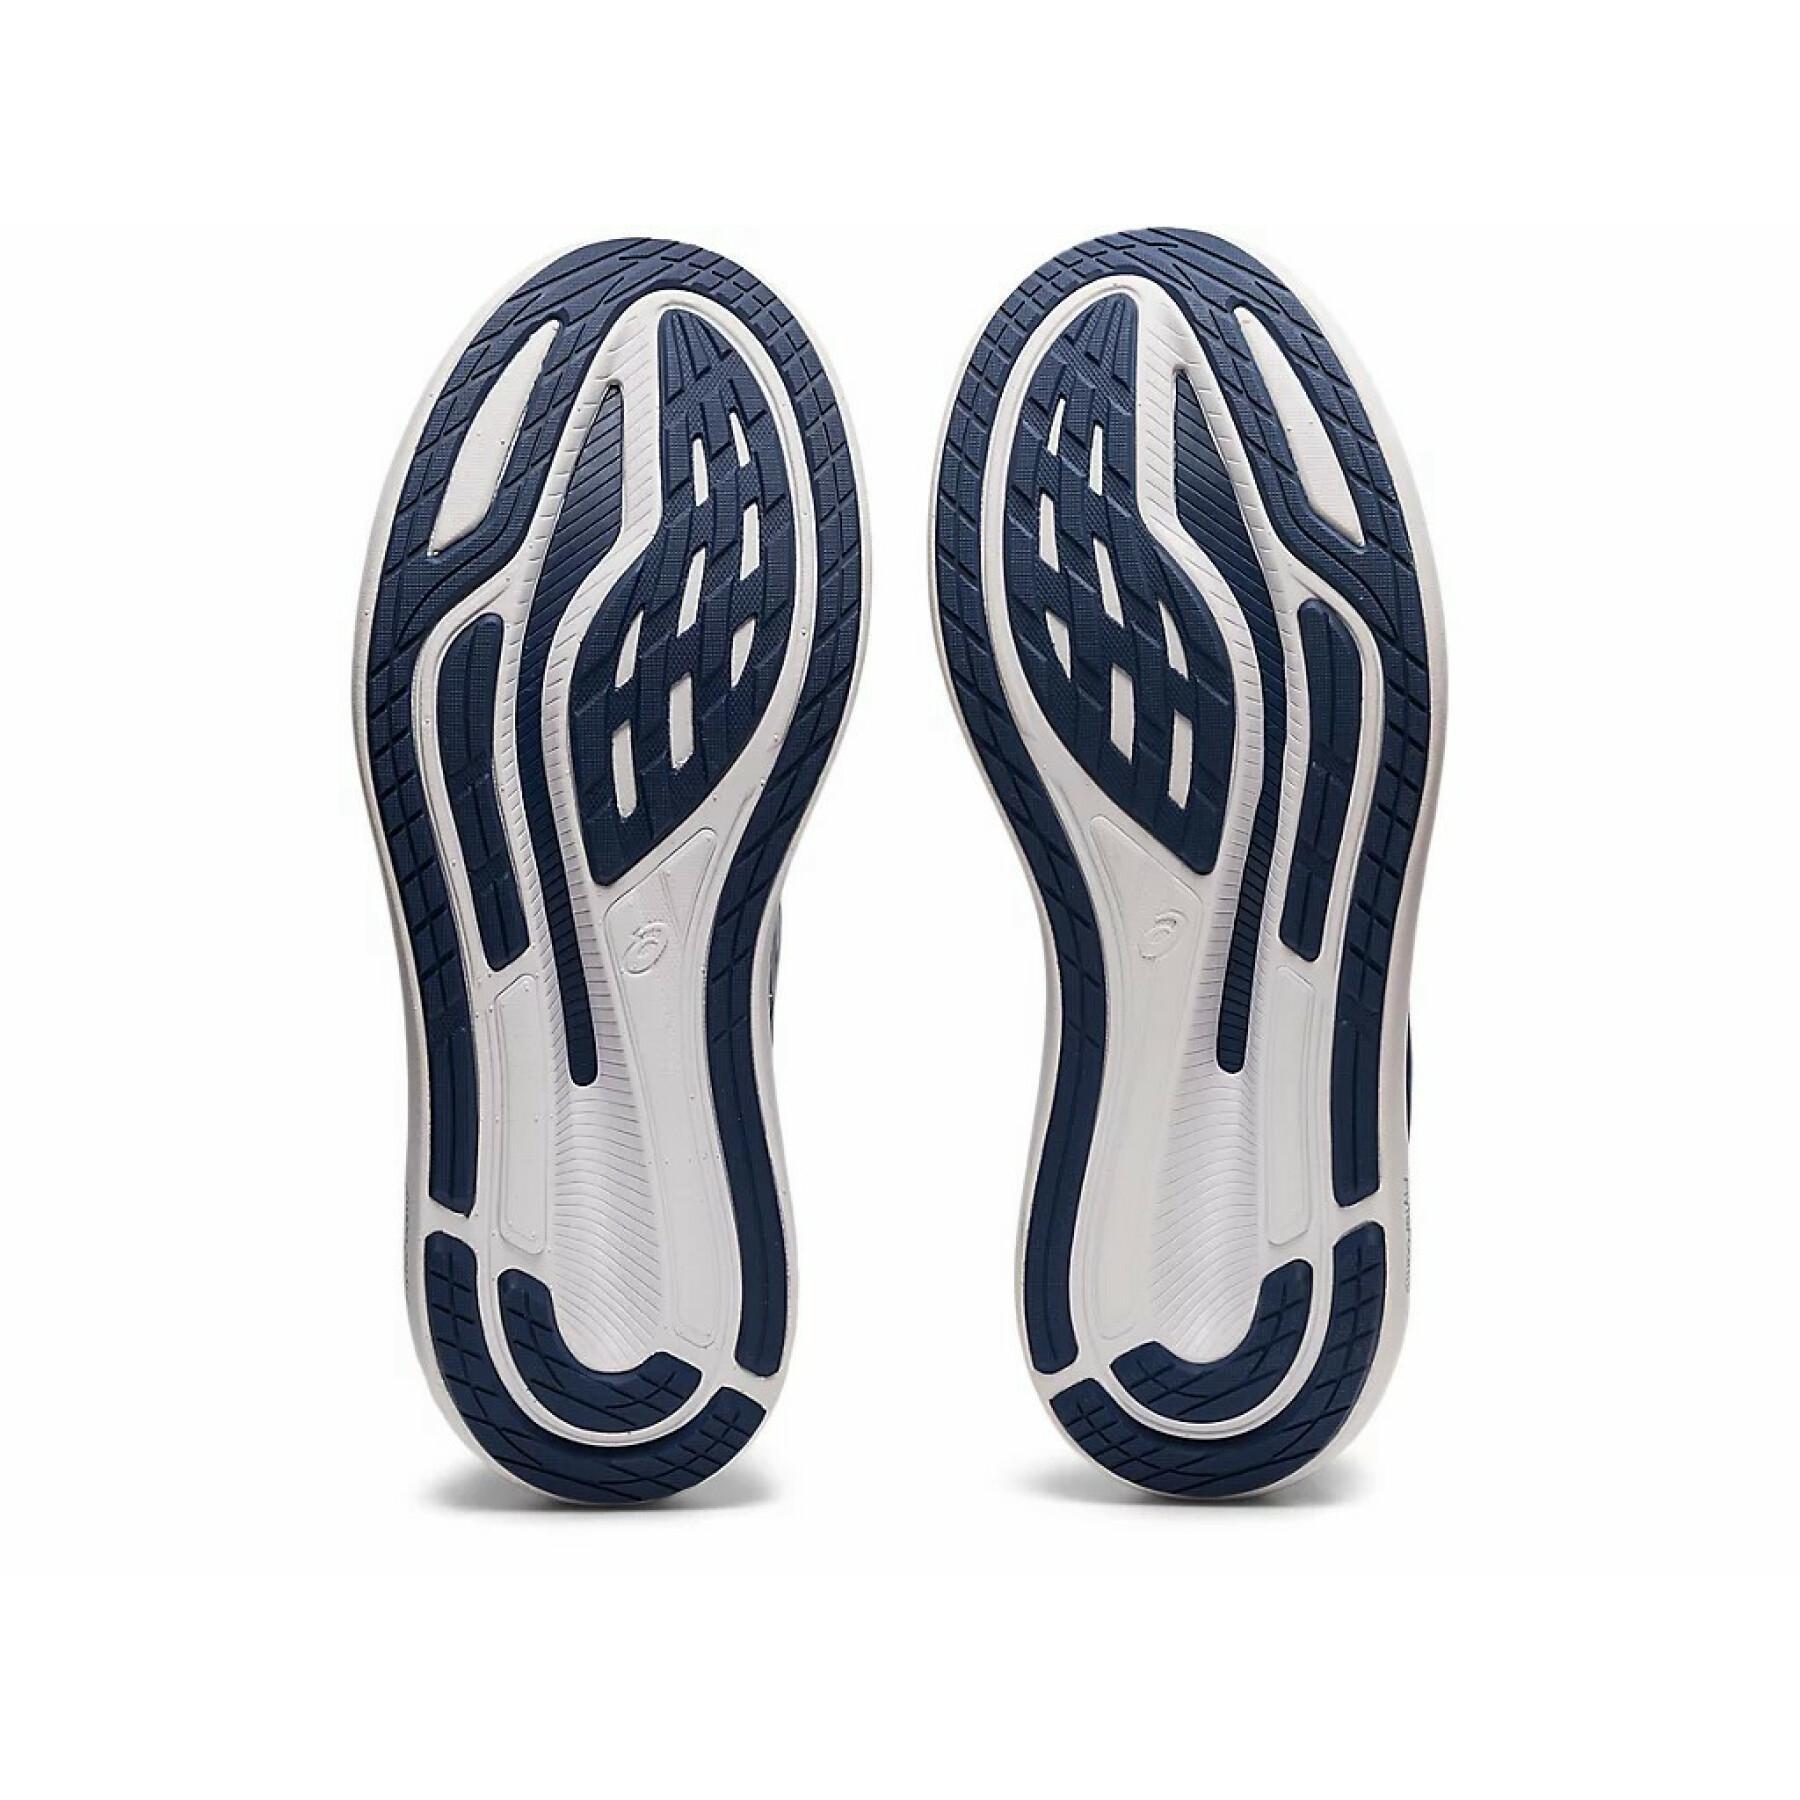 Zapatillas de running para mujer Asics Glideride 2